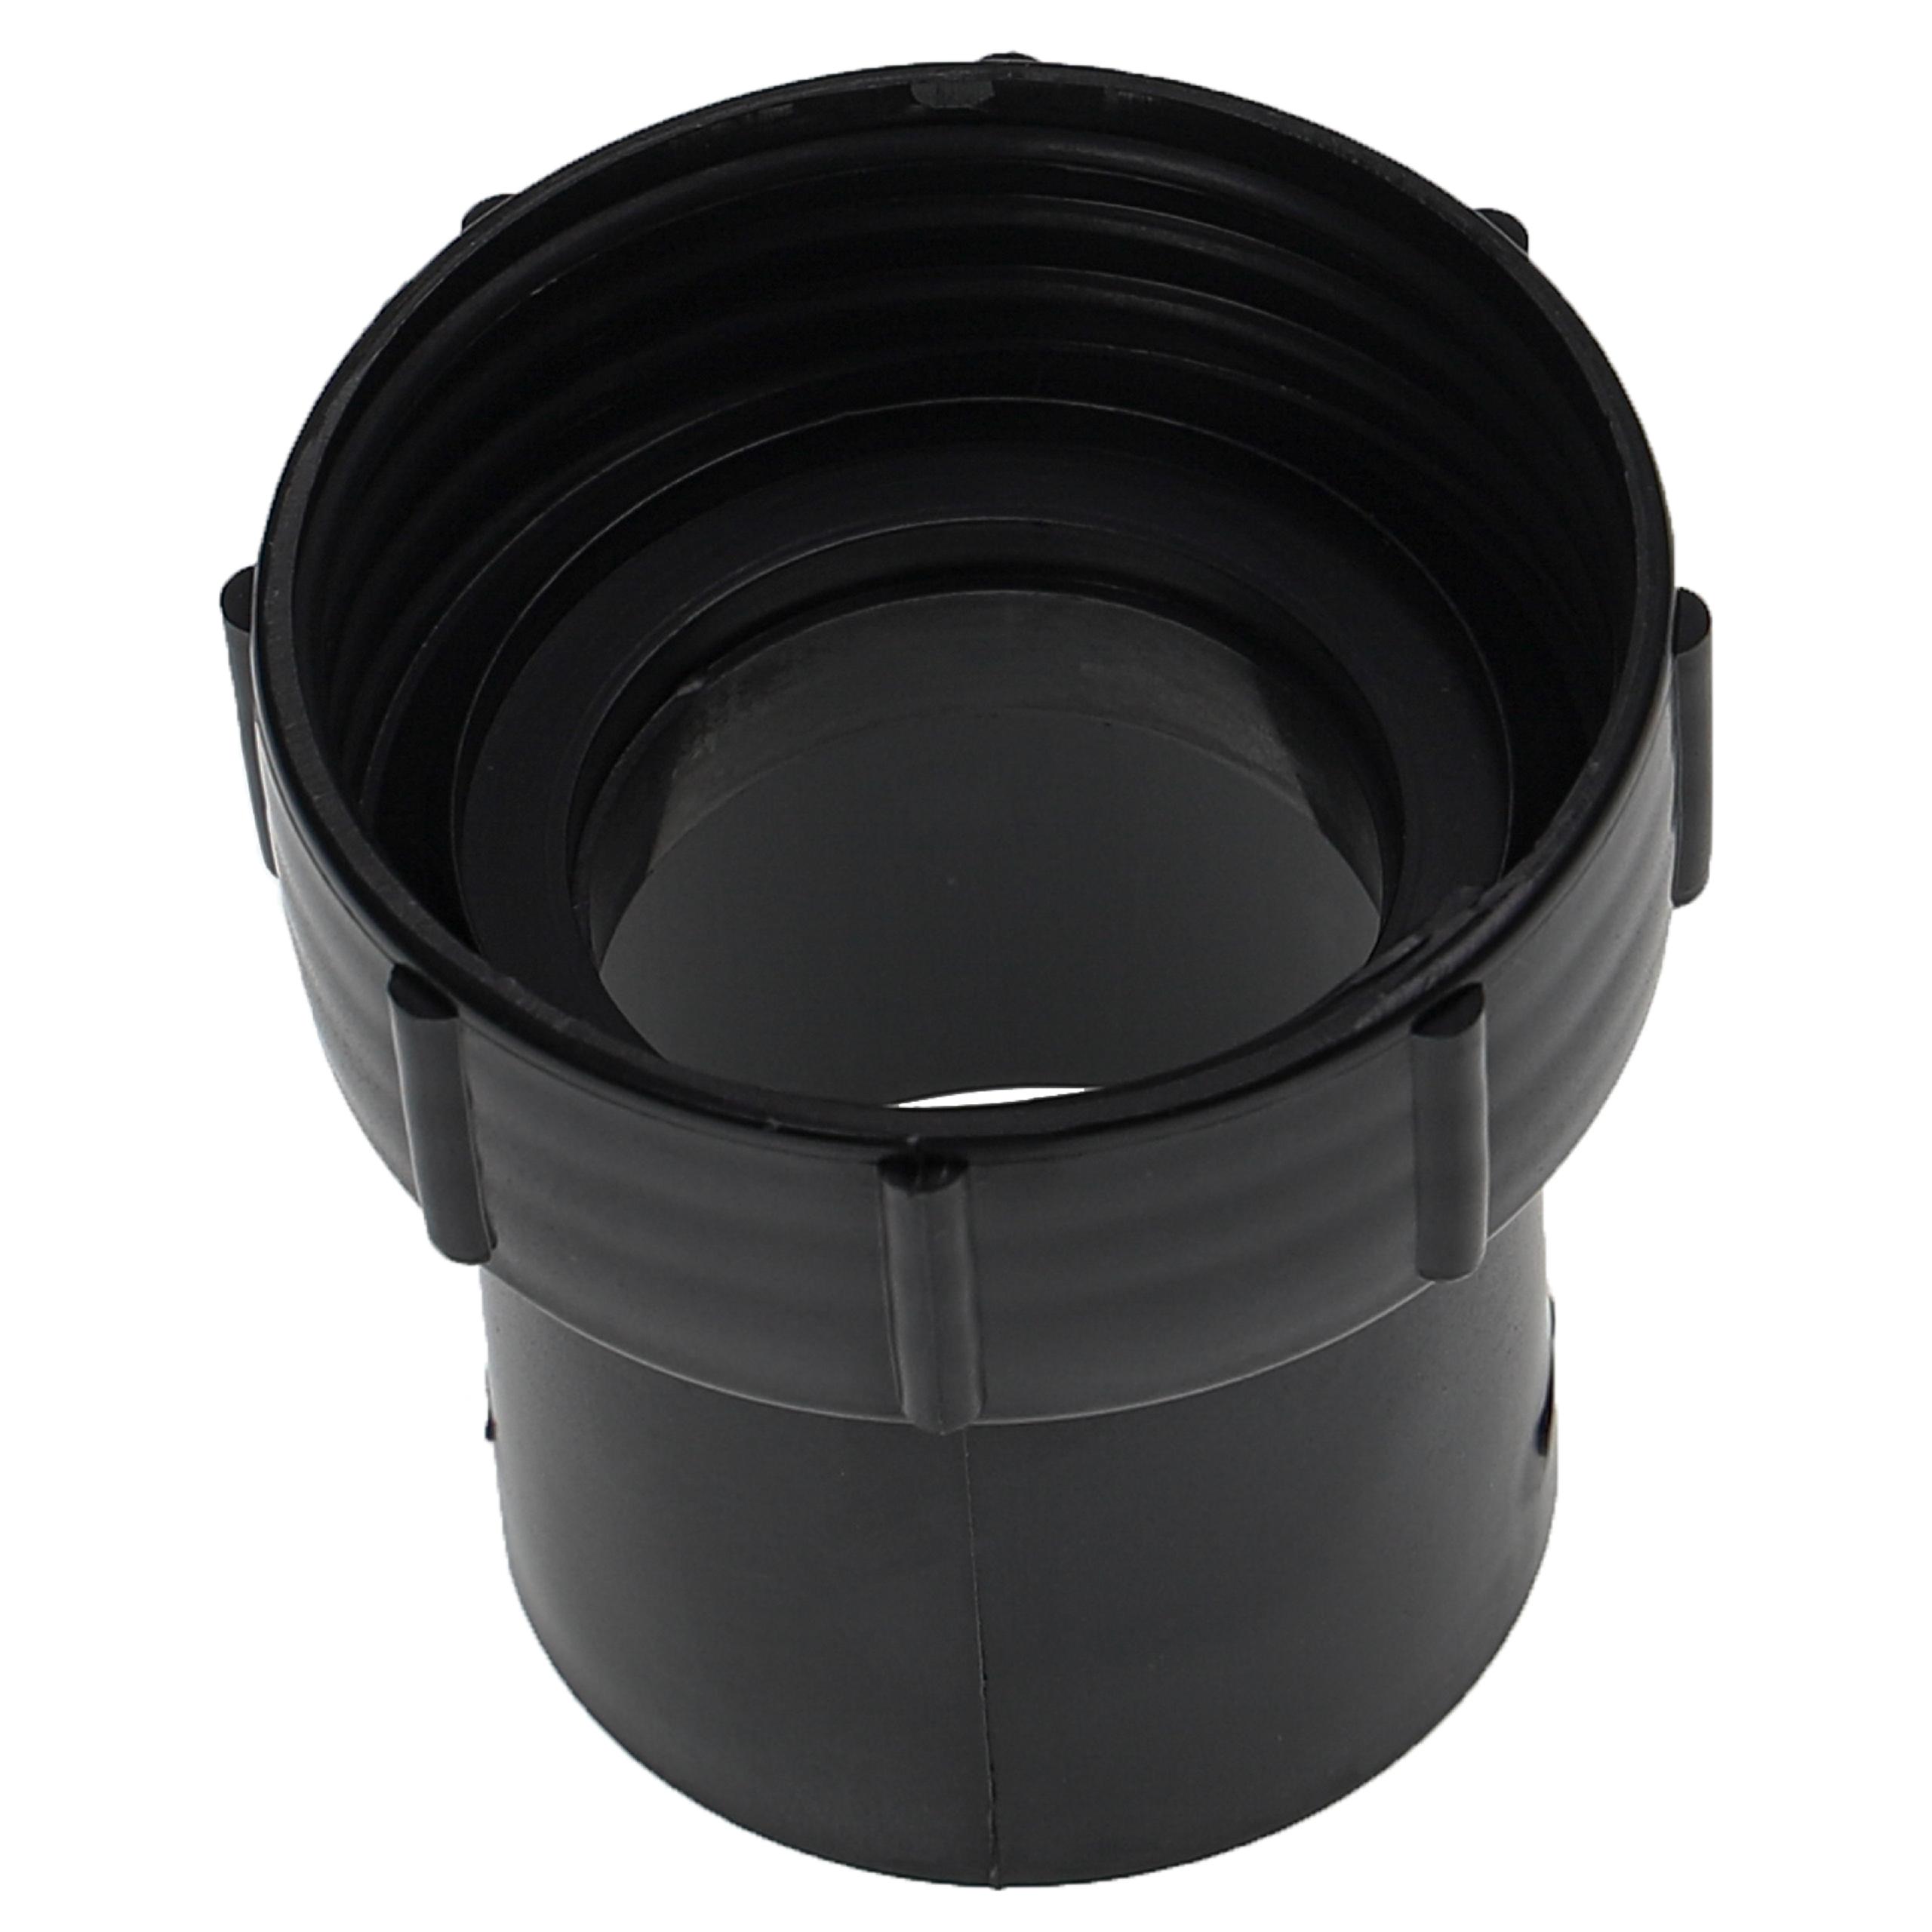 Adattatore per tubo flessibile per Numatic / Nilfisk Charles aspiratori ecc - 32 mm Connettore rotondo, plasti